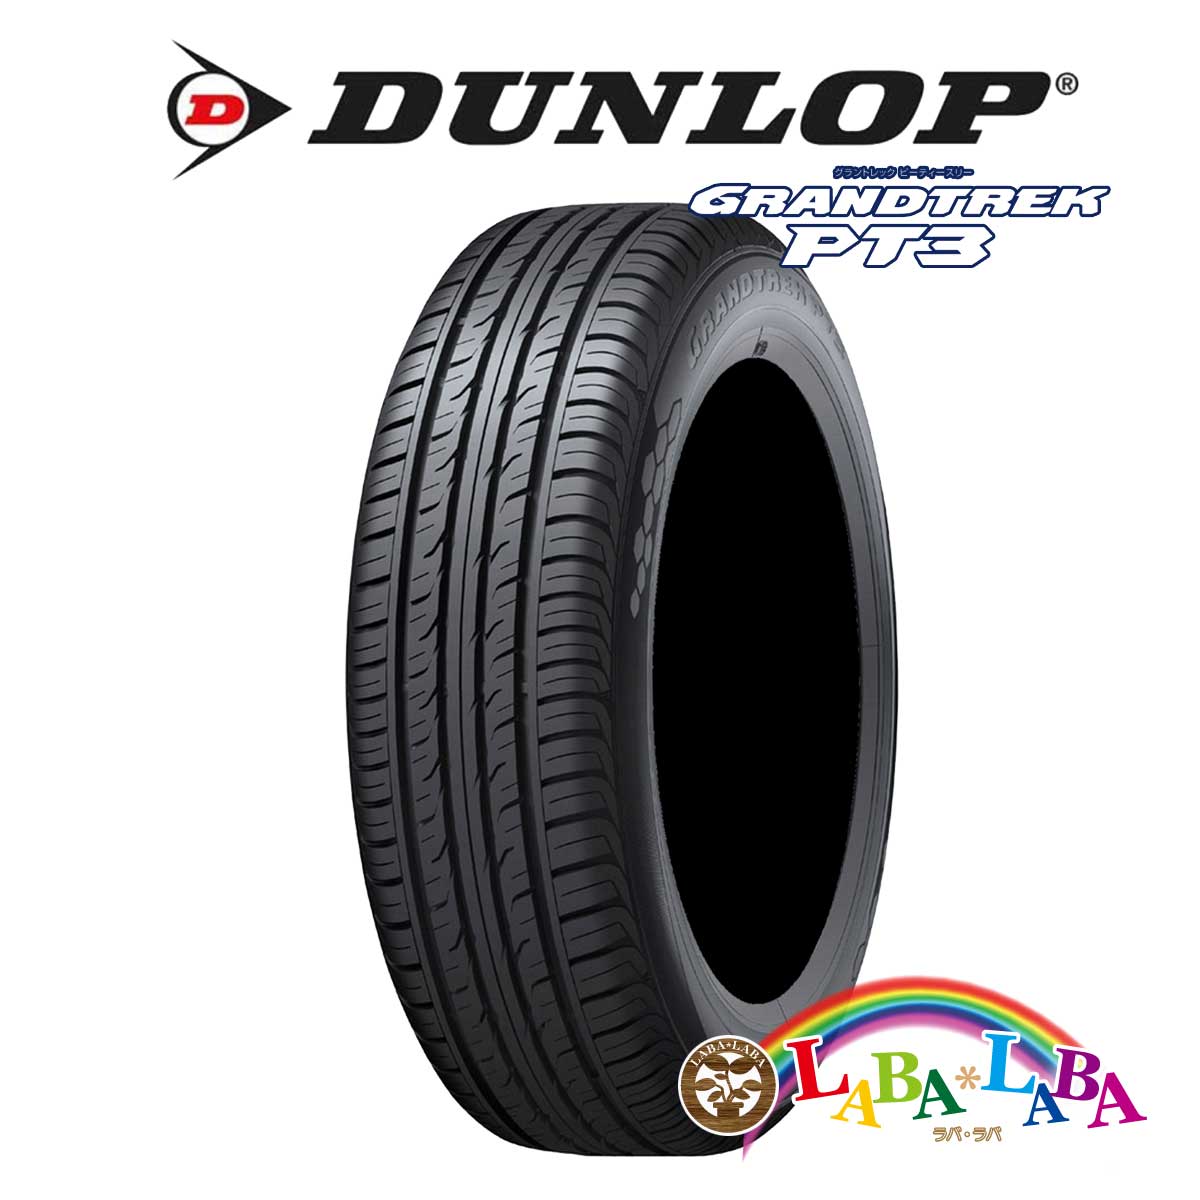 Dunlop 100h ダンロップ Grandtrek グラントレック Suv Pt3 225 タイヤ ホイール 60r18 100h サマータイヤ Suv 4wd ラバラバ 店２本以上送料無料 国産タイヤ サマータイヤ 新品 タイヤのみ